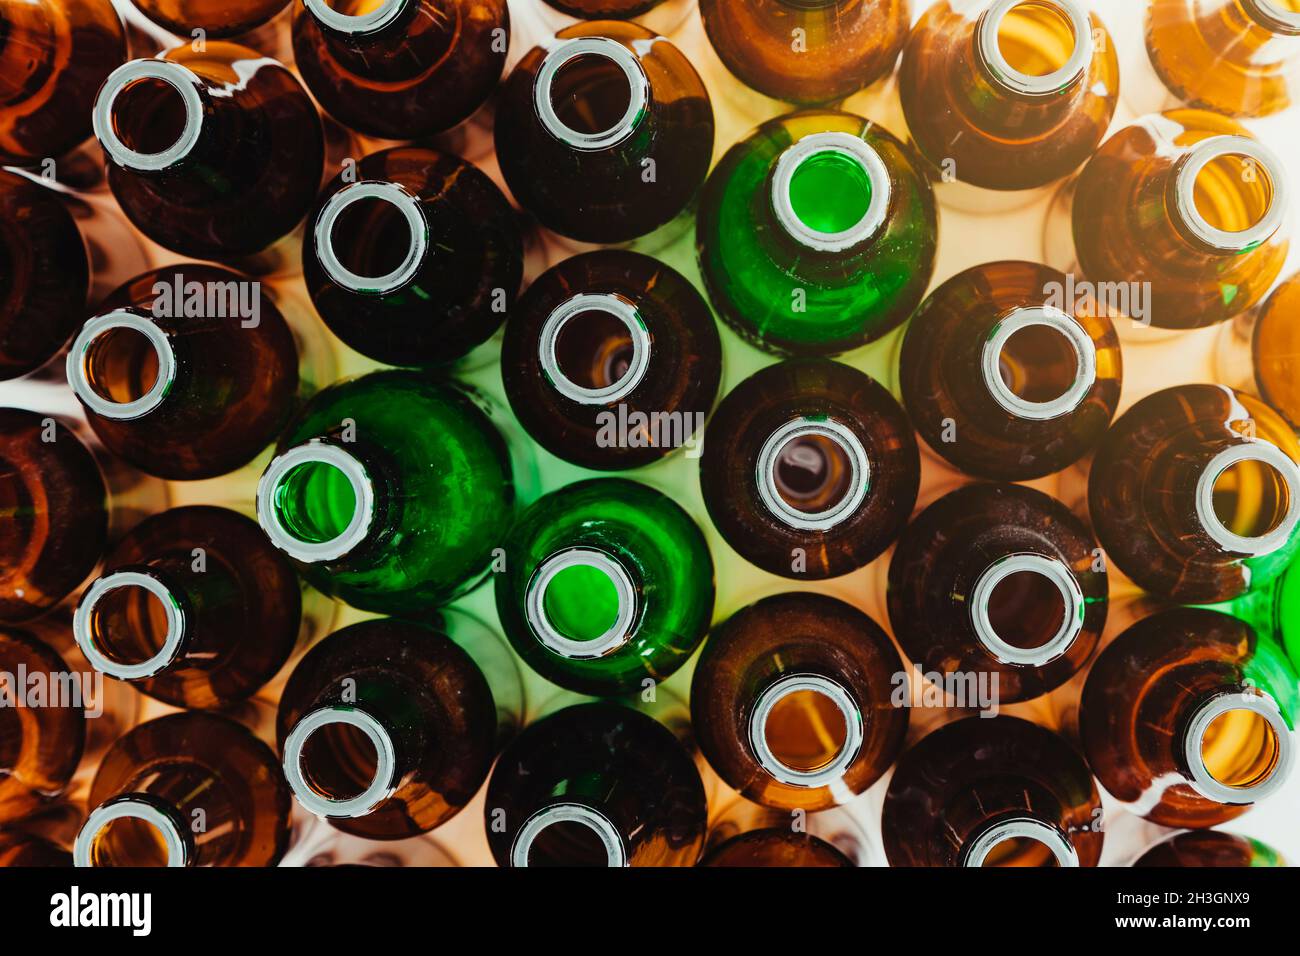 Visto dall'alto, molte bottiglie di vetro verde e marrone vuote sono in posizione verticale. In un angolo entra un bagliore di luce. Foto Stock